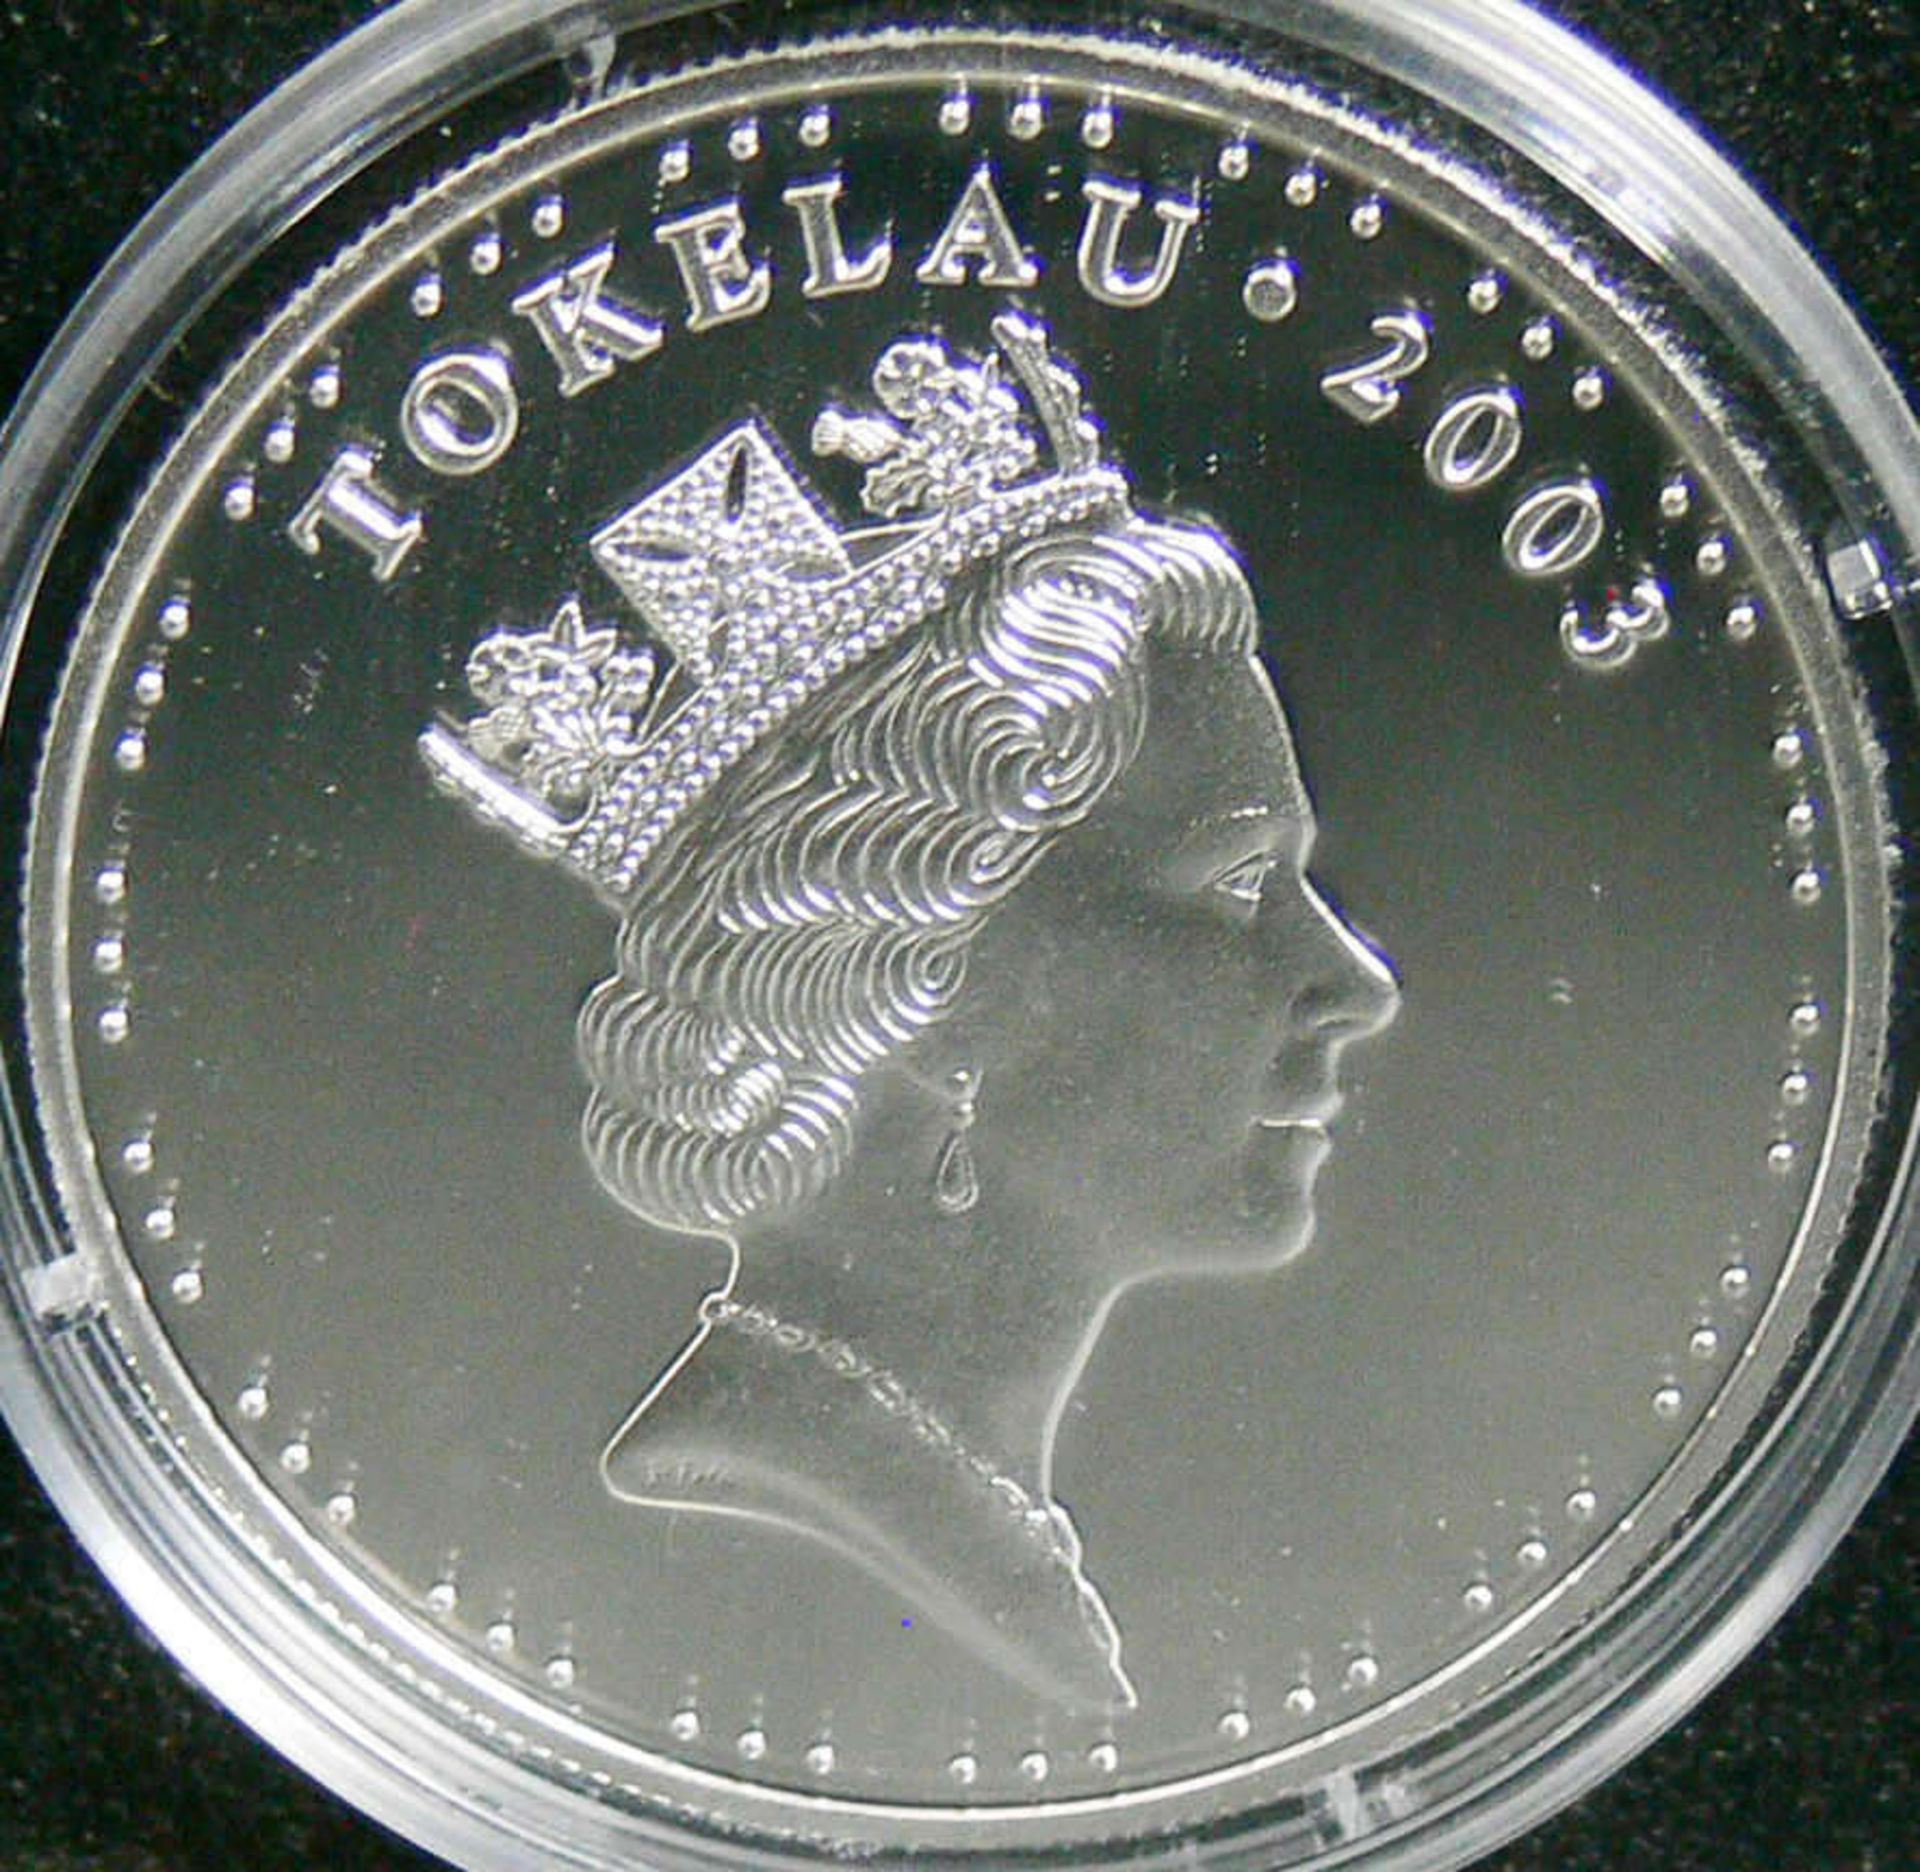 Tokelau 2003, 5 Tala - Silbermünze "Capt. Smith, General Jackson". Silber 999, Gewicht: 28,3 g, - Bild 2 aus 2